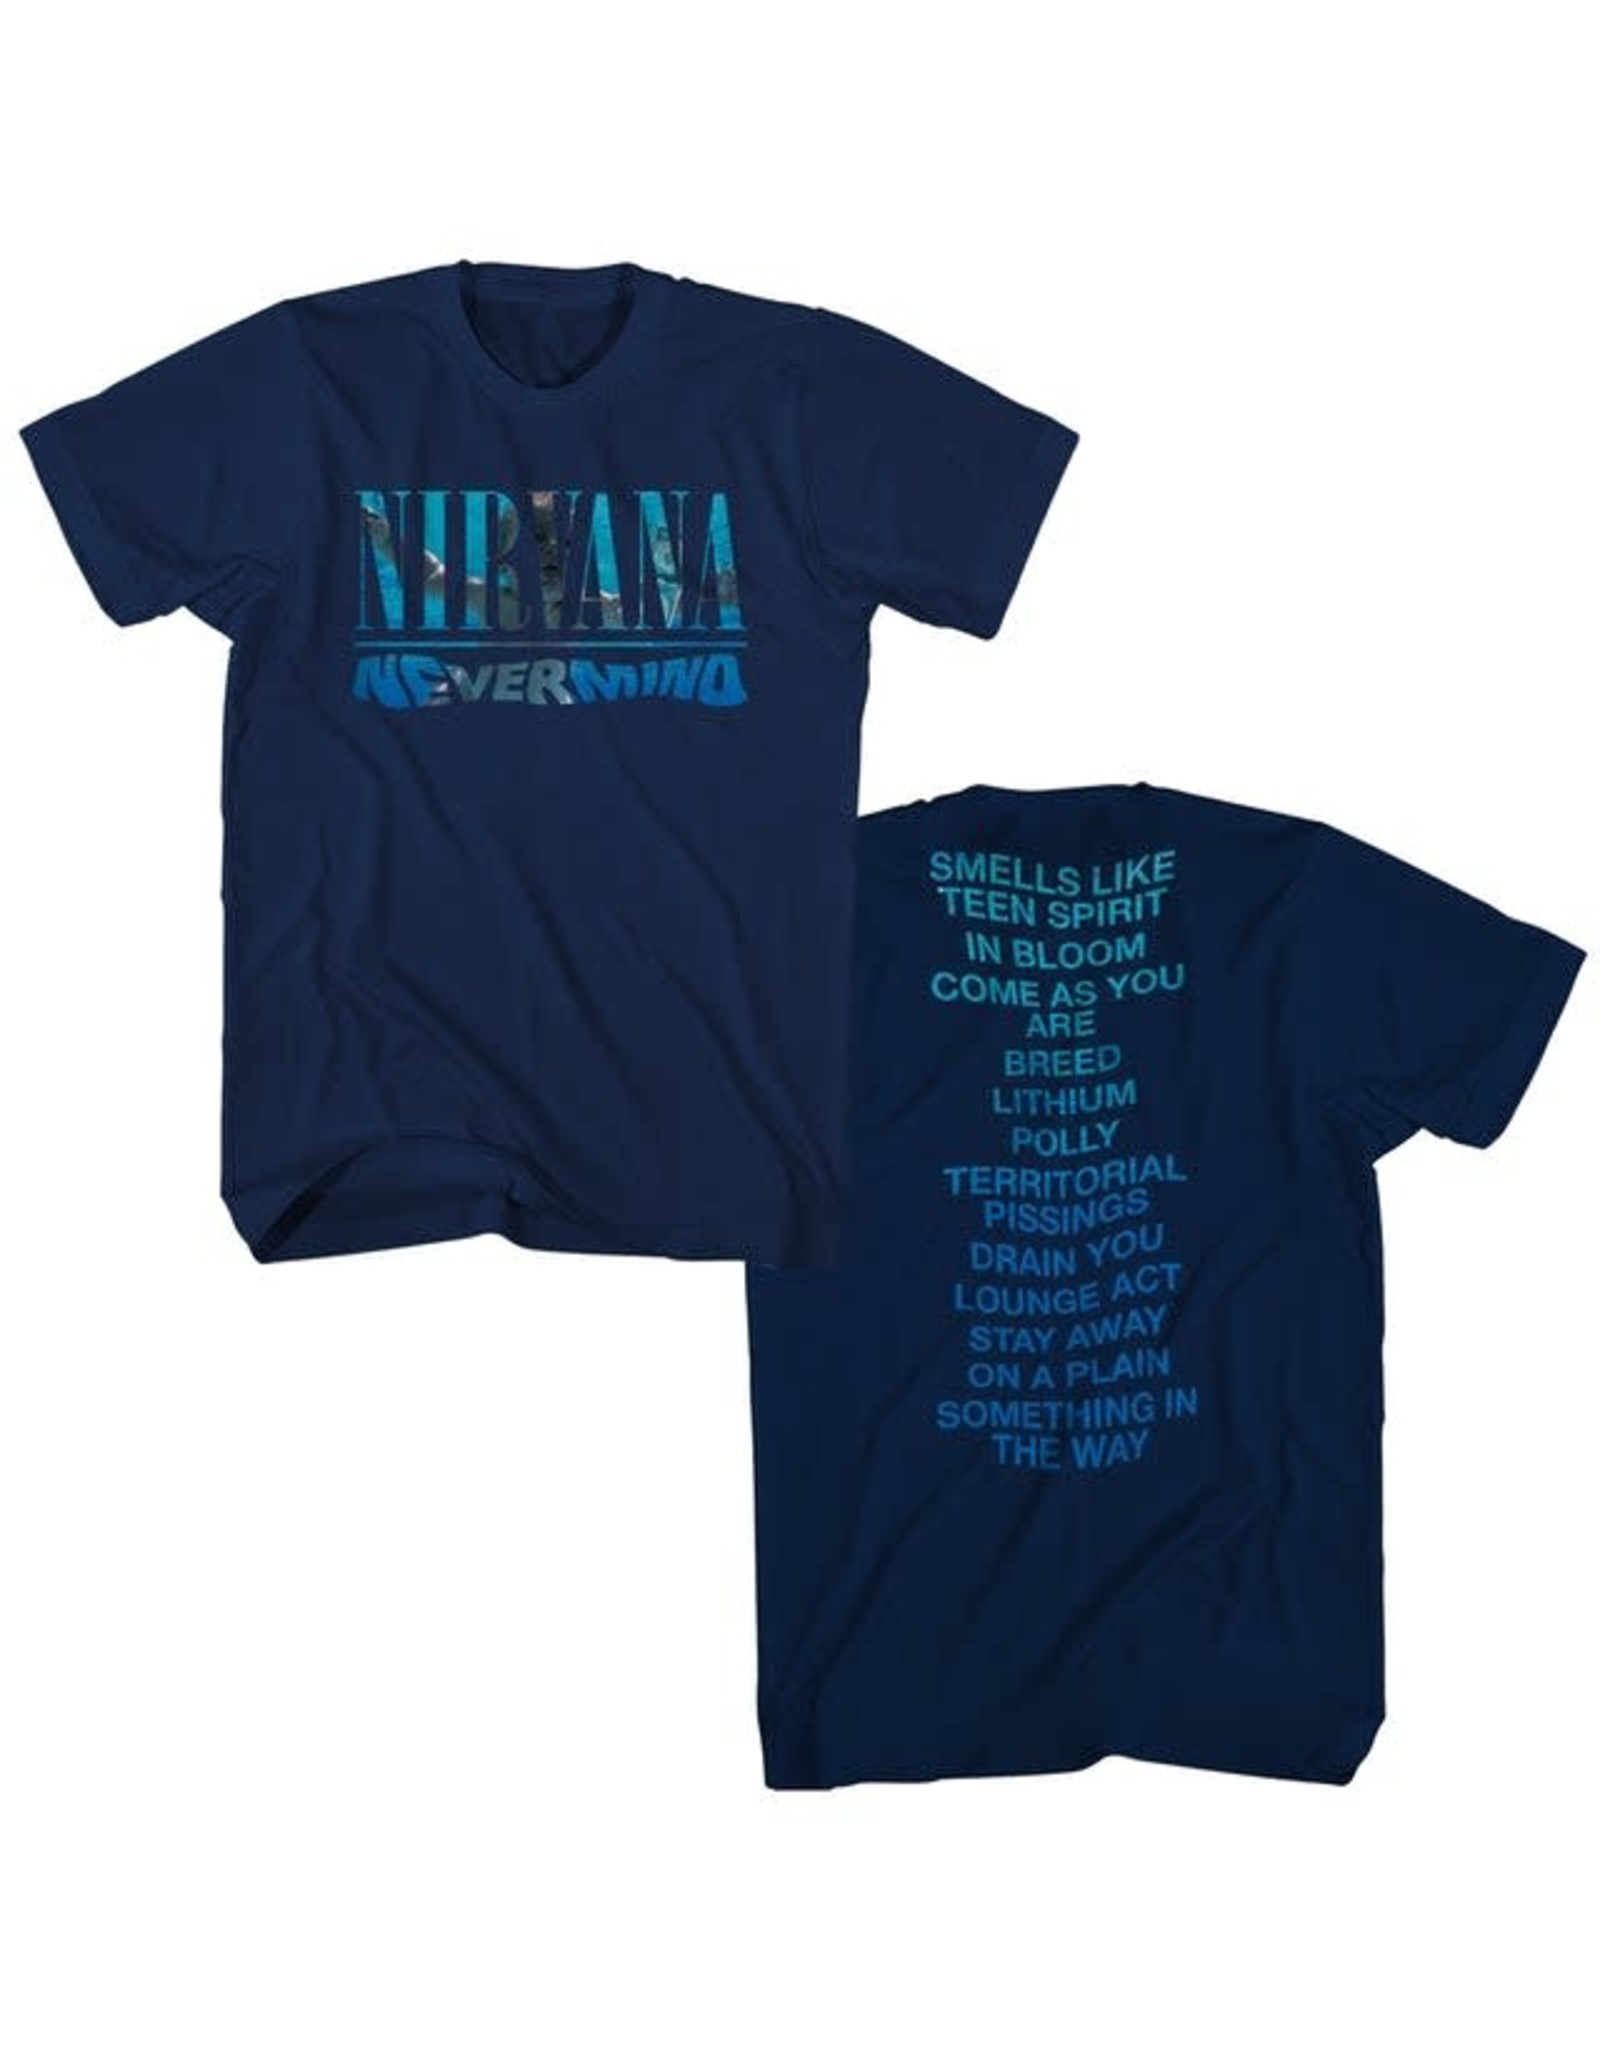 Nirvana / Nevermind Tee